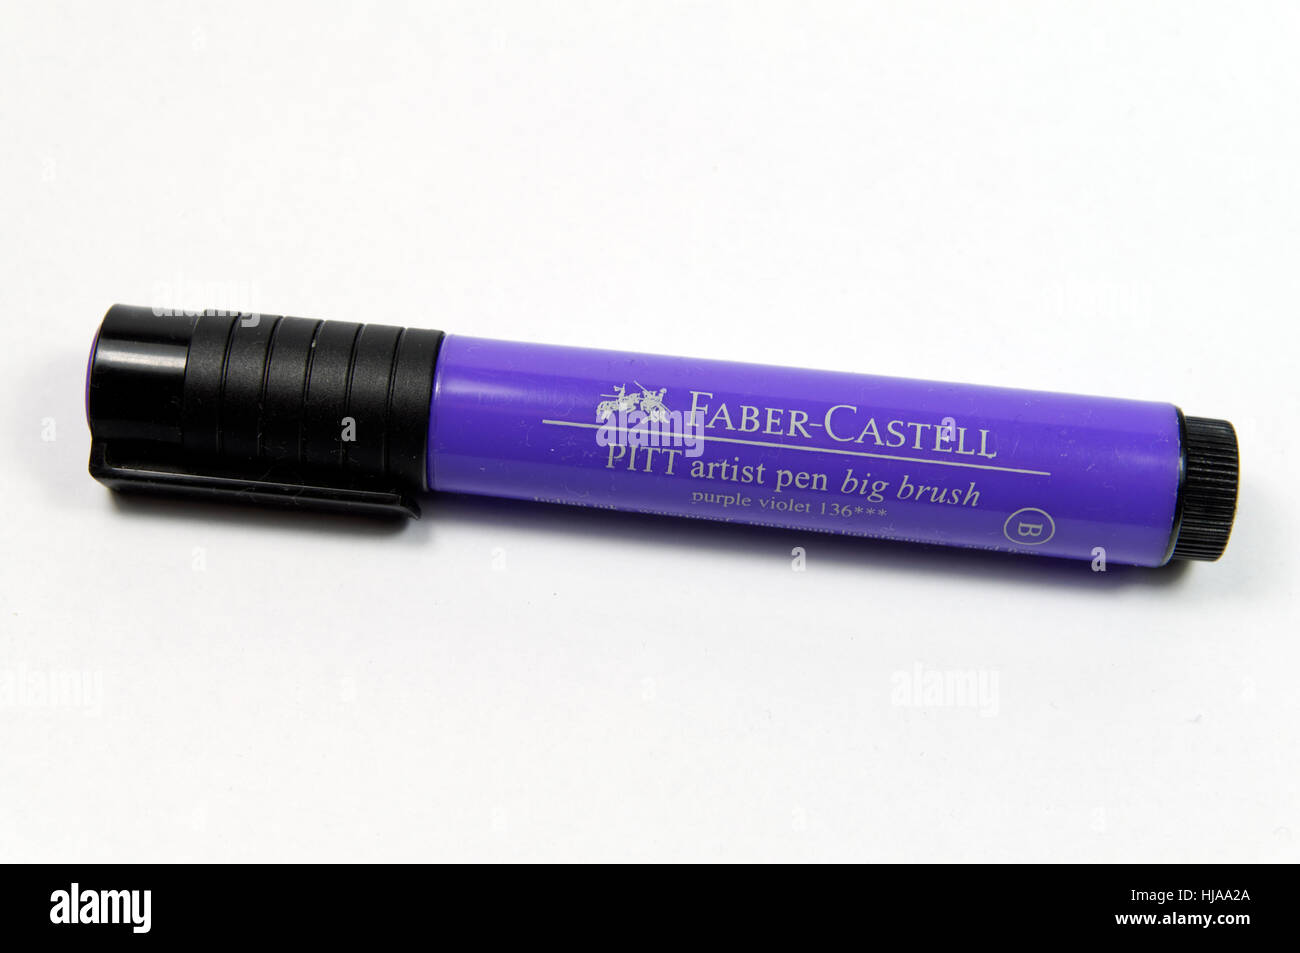 Faber Castell Pitt artist pen. Stock Photo